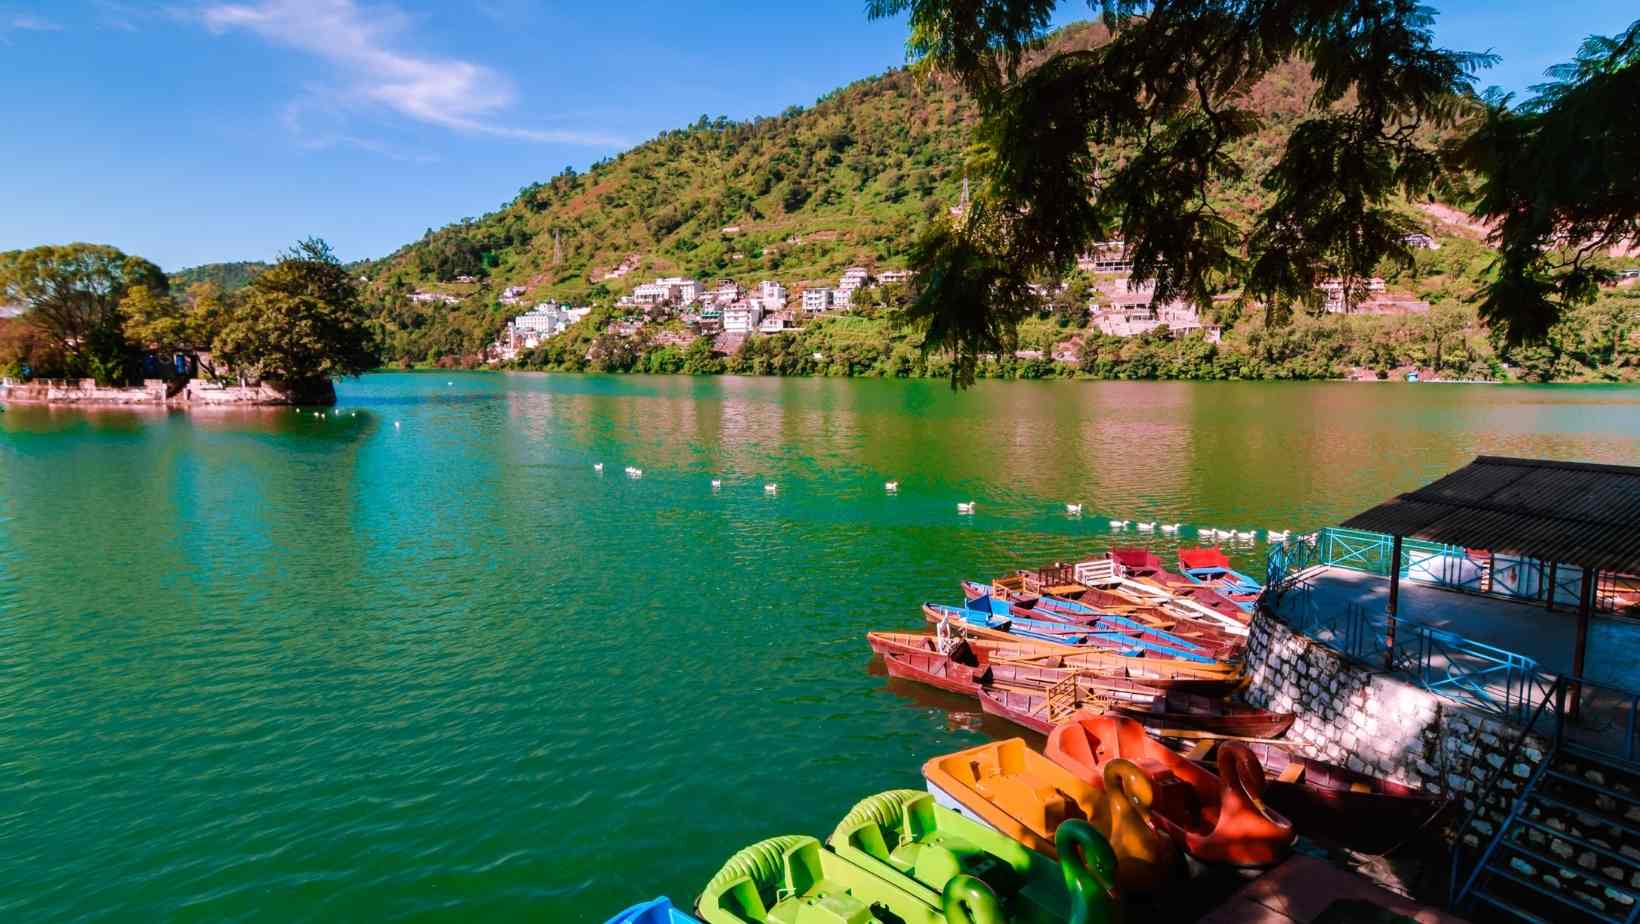 Lake in Bhimtal - Best Lakes In Uttarakhand